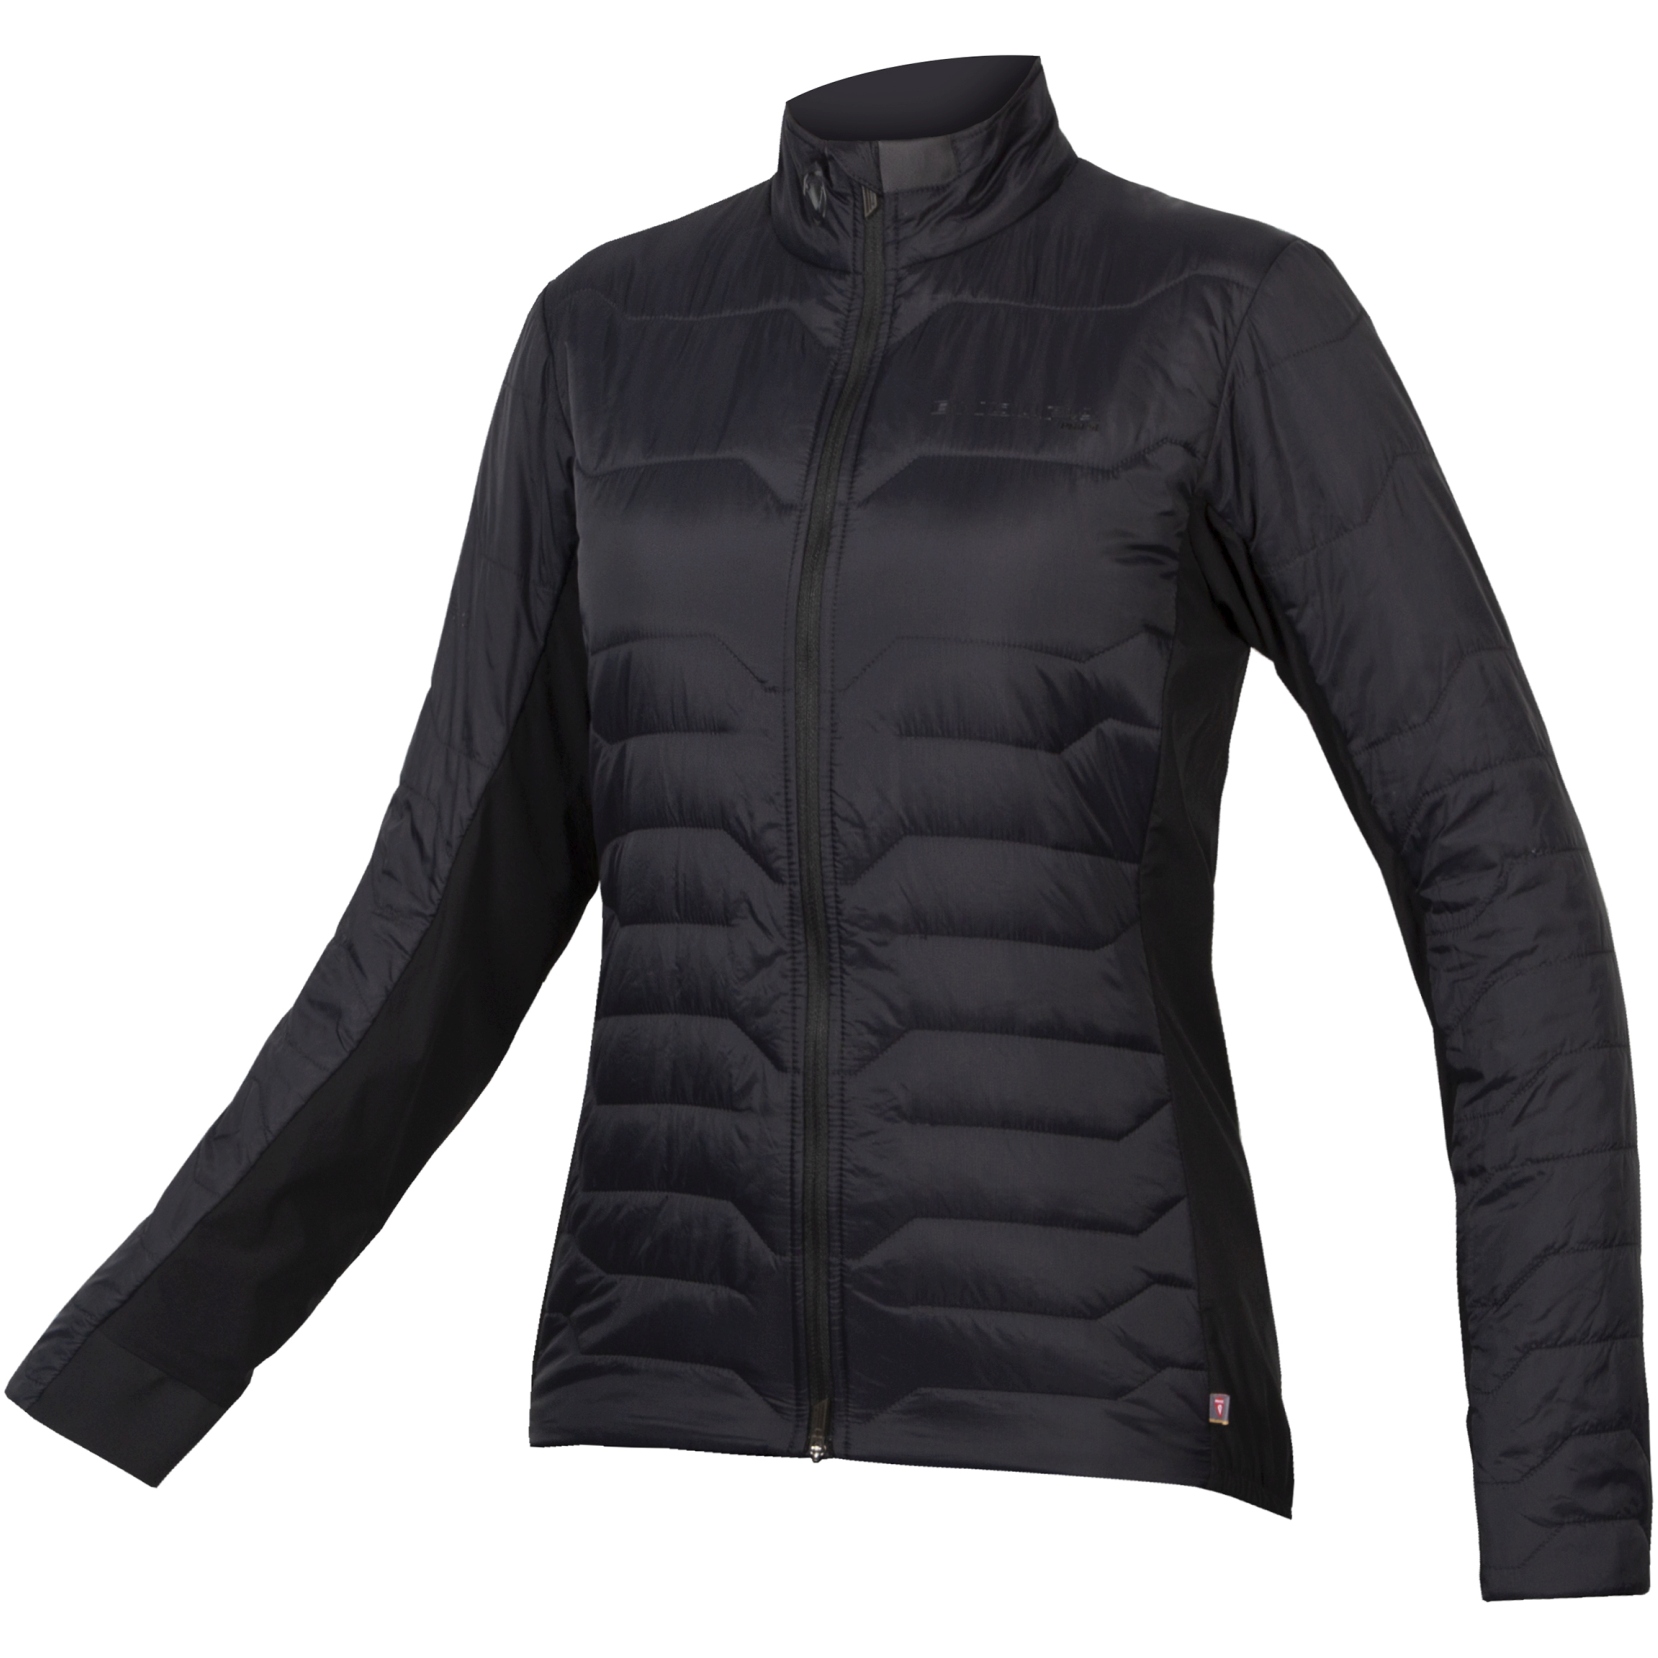 Produktbild von Endura Pro SL PrimaLoft® Damen Jacke - schwarz